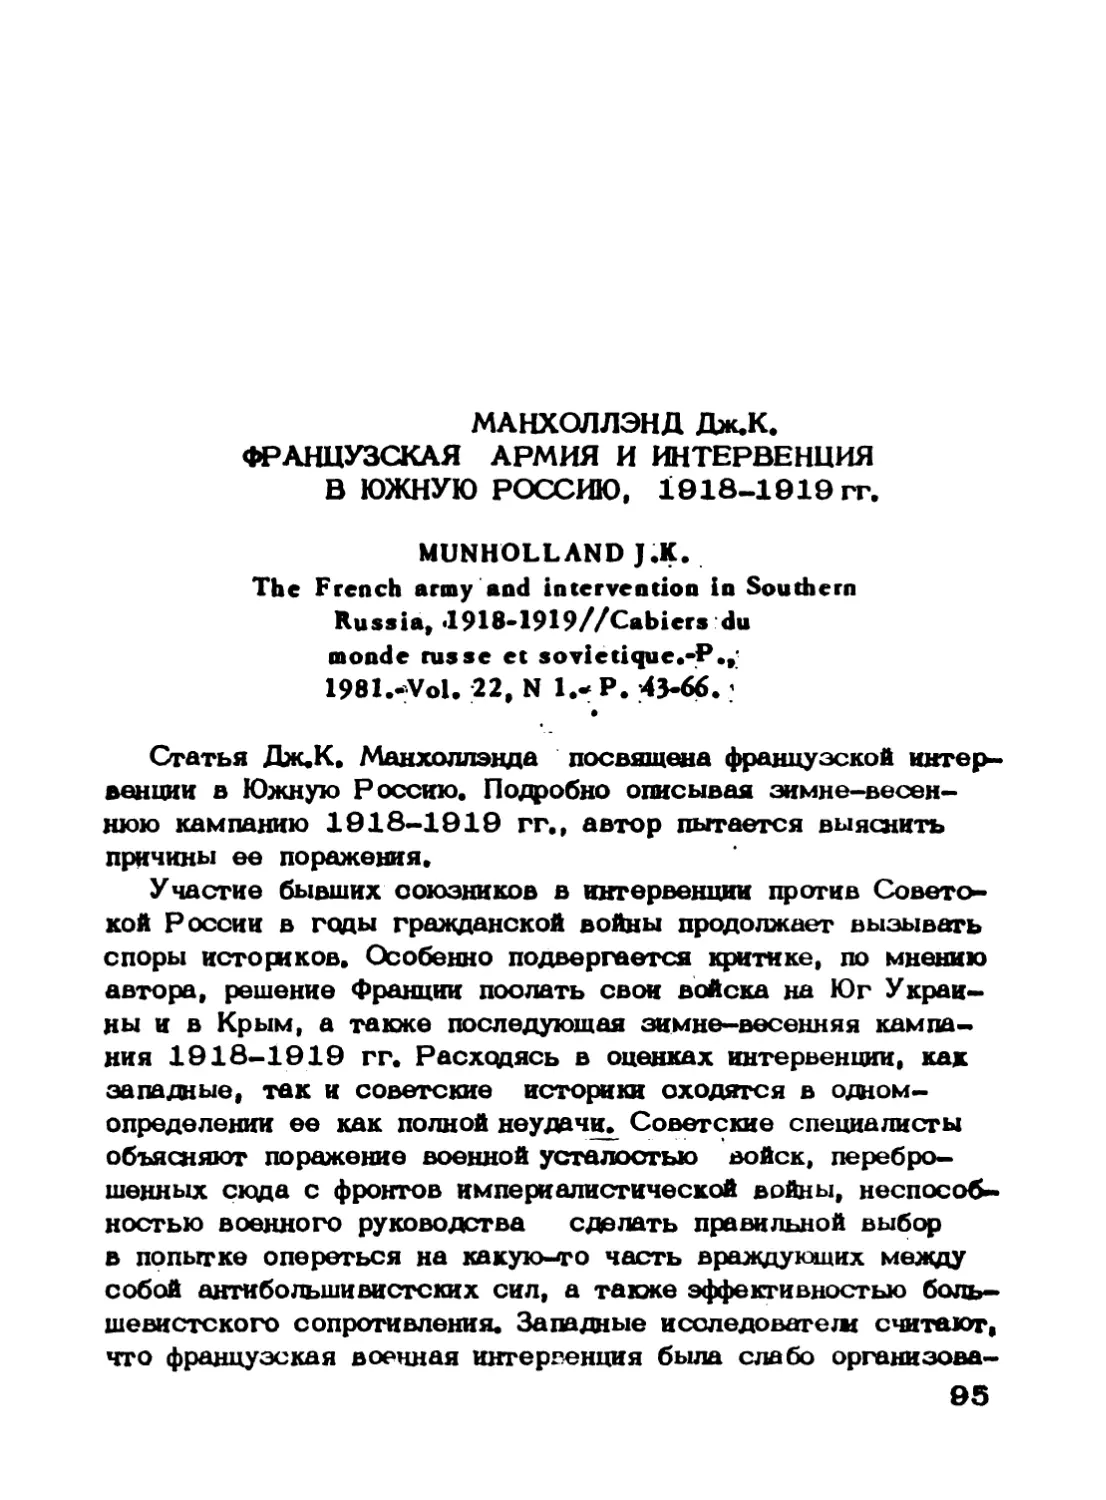 Манхоллэнд Дж.К. Французская армия и интервенция в Южную Россию, 1918-1919 гг